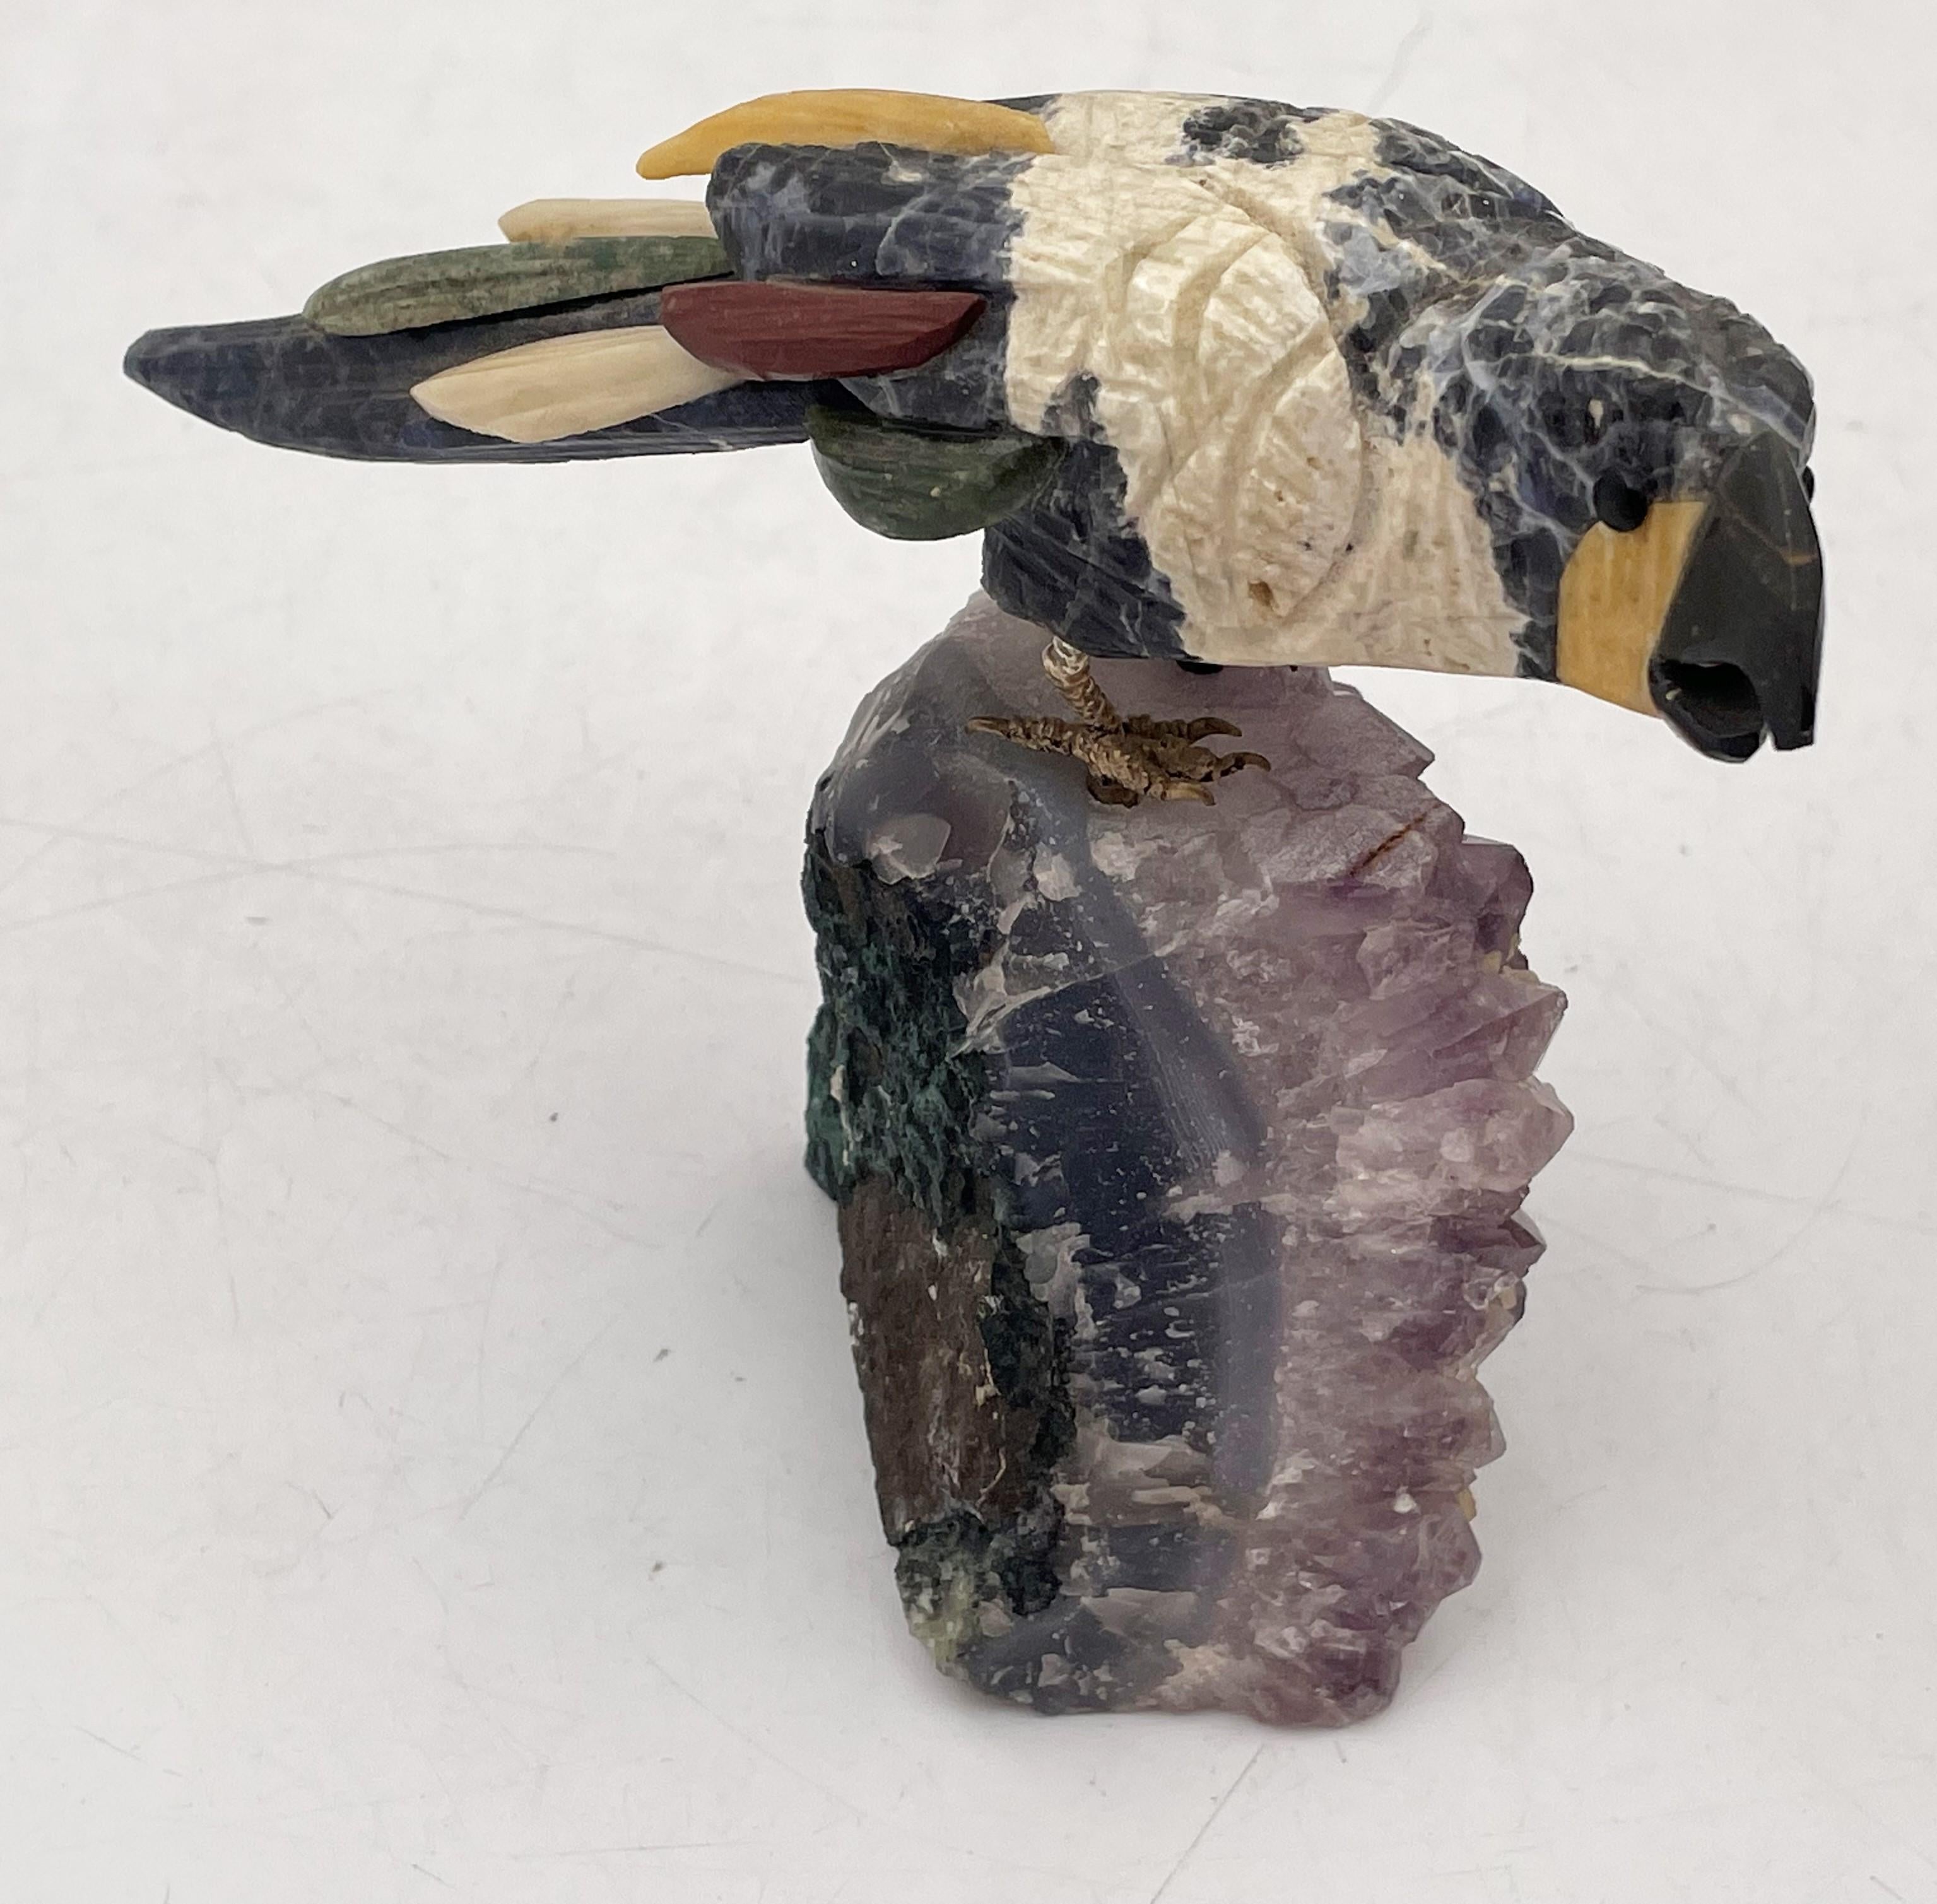 Sehr realistische und detaillierte Skulptur eines mehrfarbigen Vogels mit vergoldeten Silberbeinen, der auf einem amethystfarbenen Sockel sitzt. Dieses schöne Stück misst 3 3/4'' in der Höhe, 5 3/8'' in der Tiefe und 2 1/2'' in der Breite.

Bitte